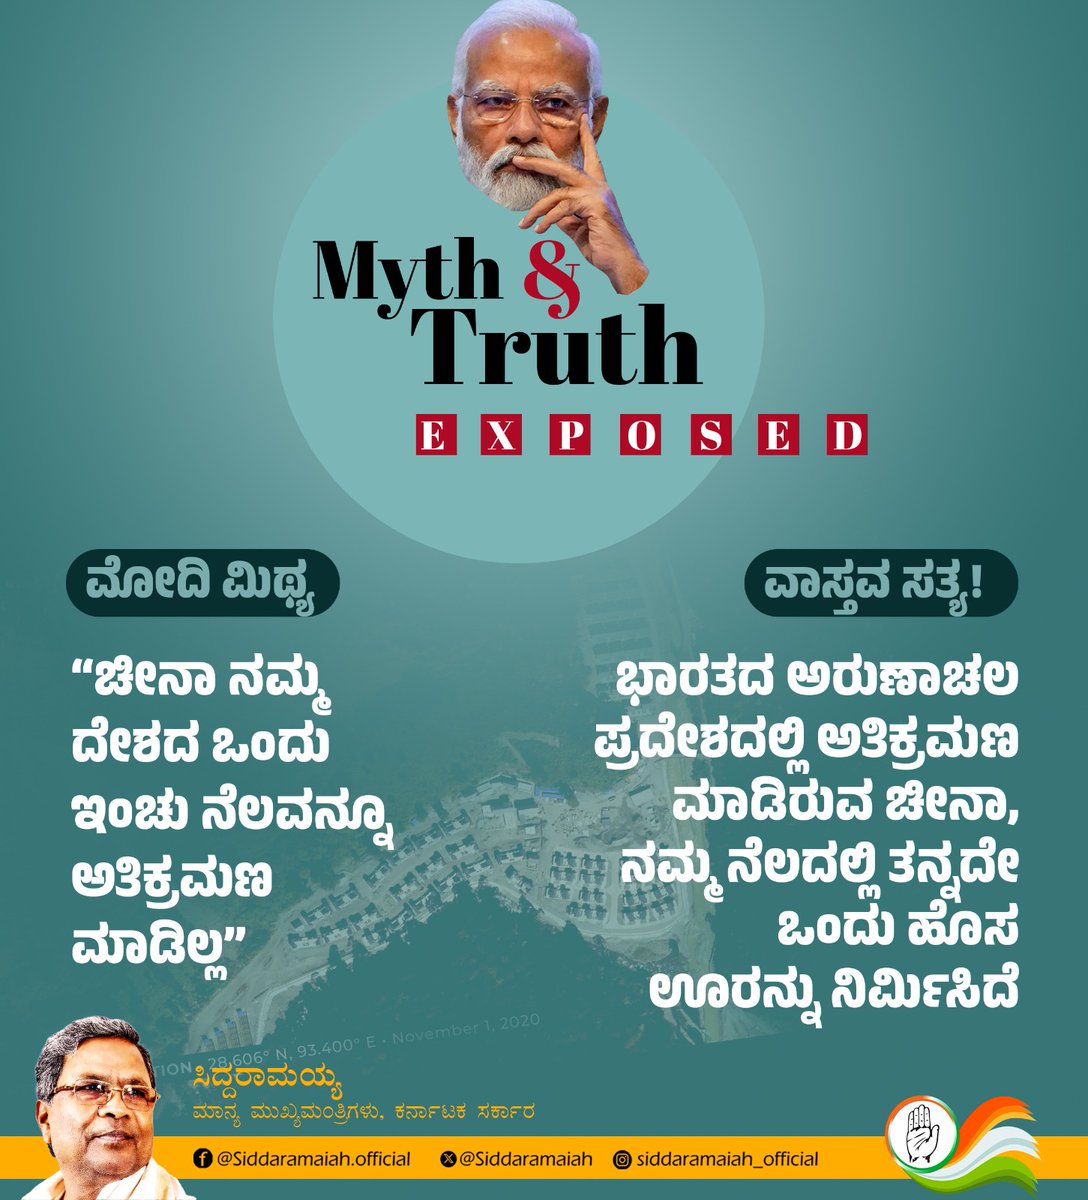 ಪ್ರಧಾನಿ @narendramodi ಹೇಳುವ ಕಟ್ಟು ಕಥೆಗಳನ್ನು ನಂಬದಿರಿ. ಅವರು ತಮ್ಮ ಜೀವಮಾನದಲ್ಲೇ ಸತ್ಯ ಹೇಳಿದವರಲ್ಲ. #MythvsTruth #ModiFails #ModiMosa